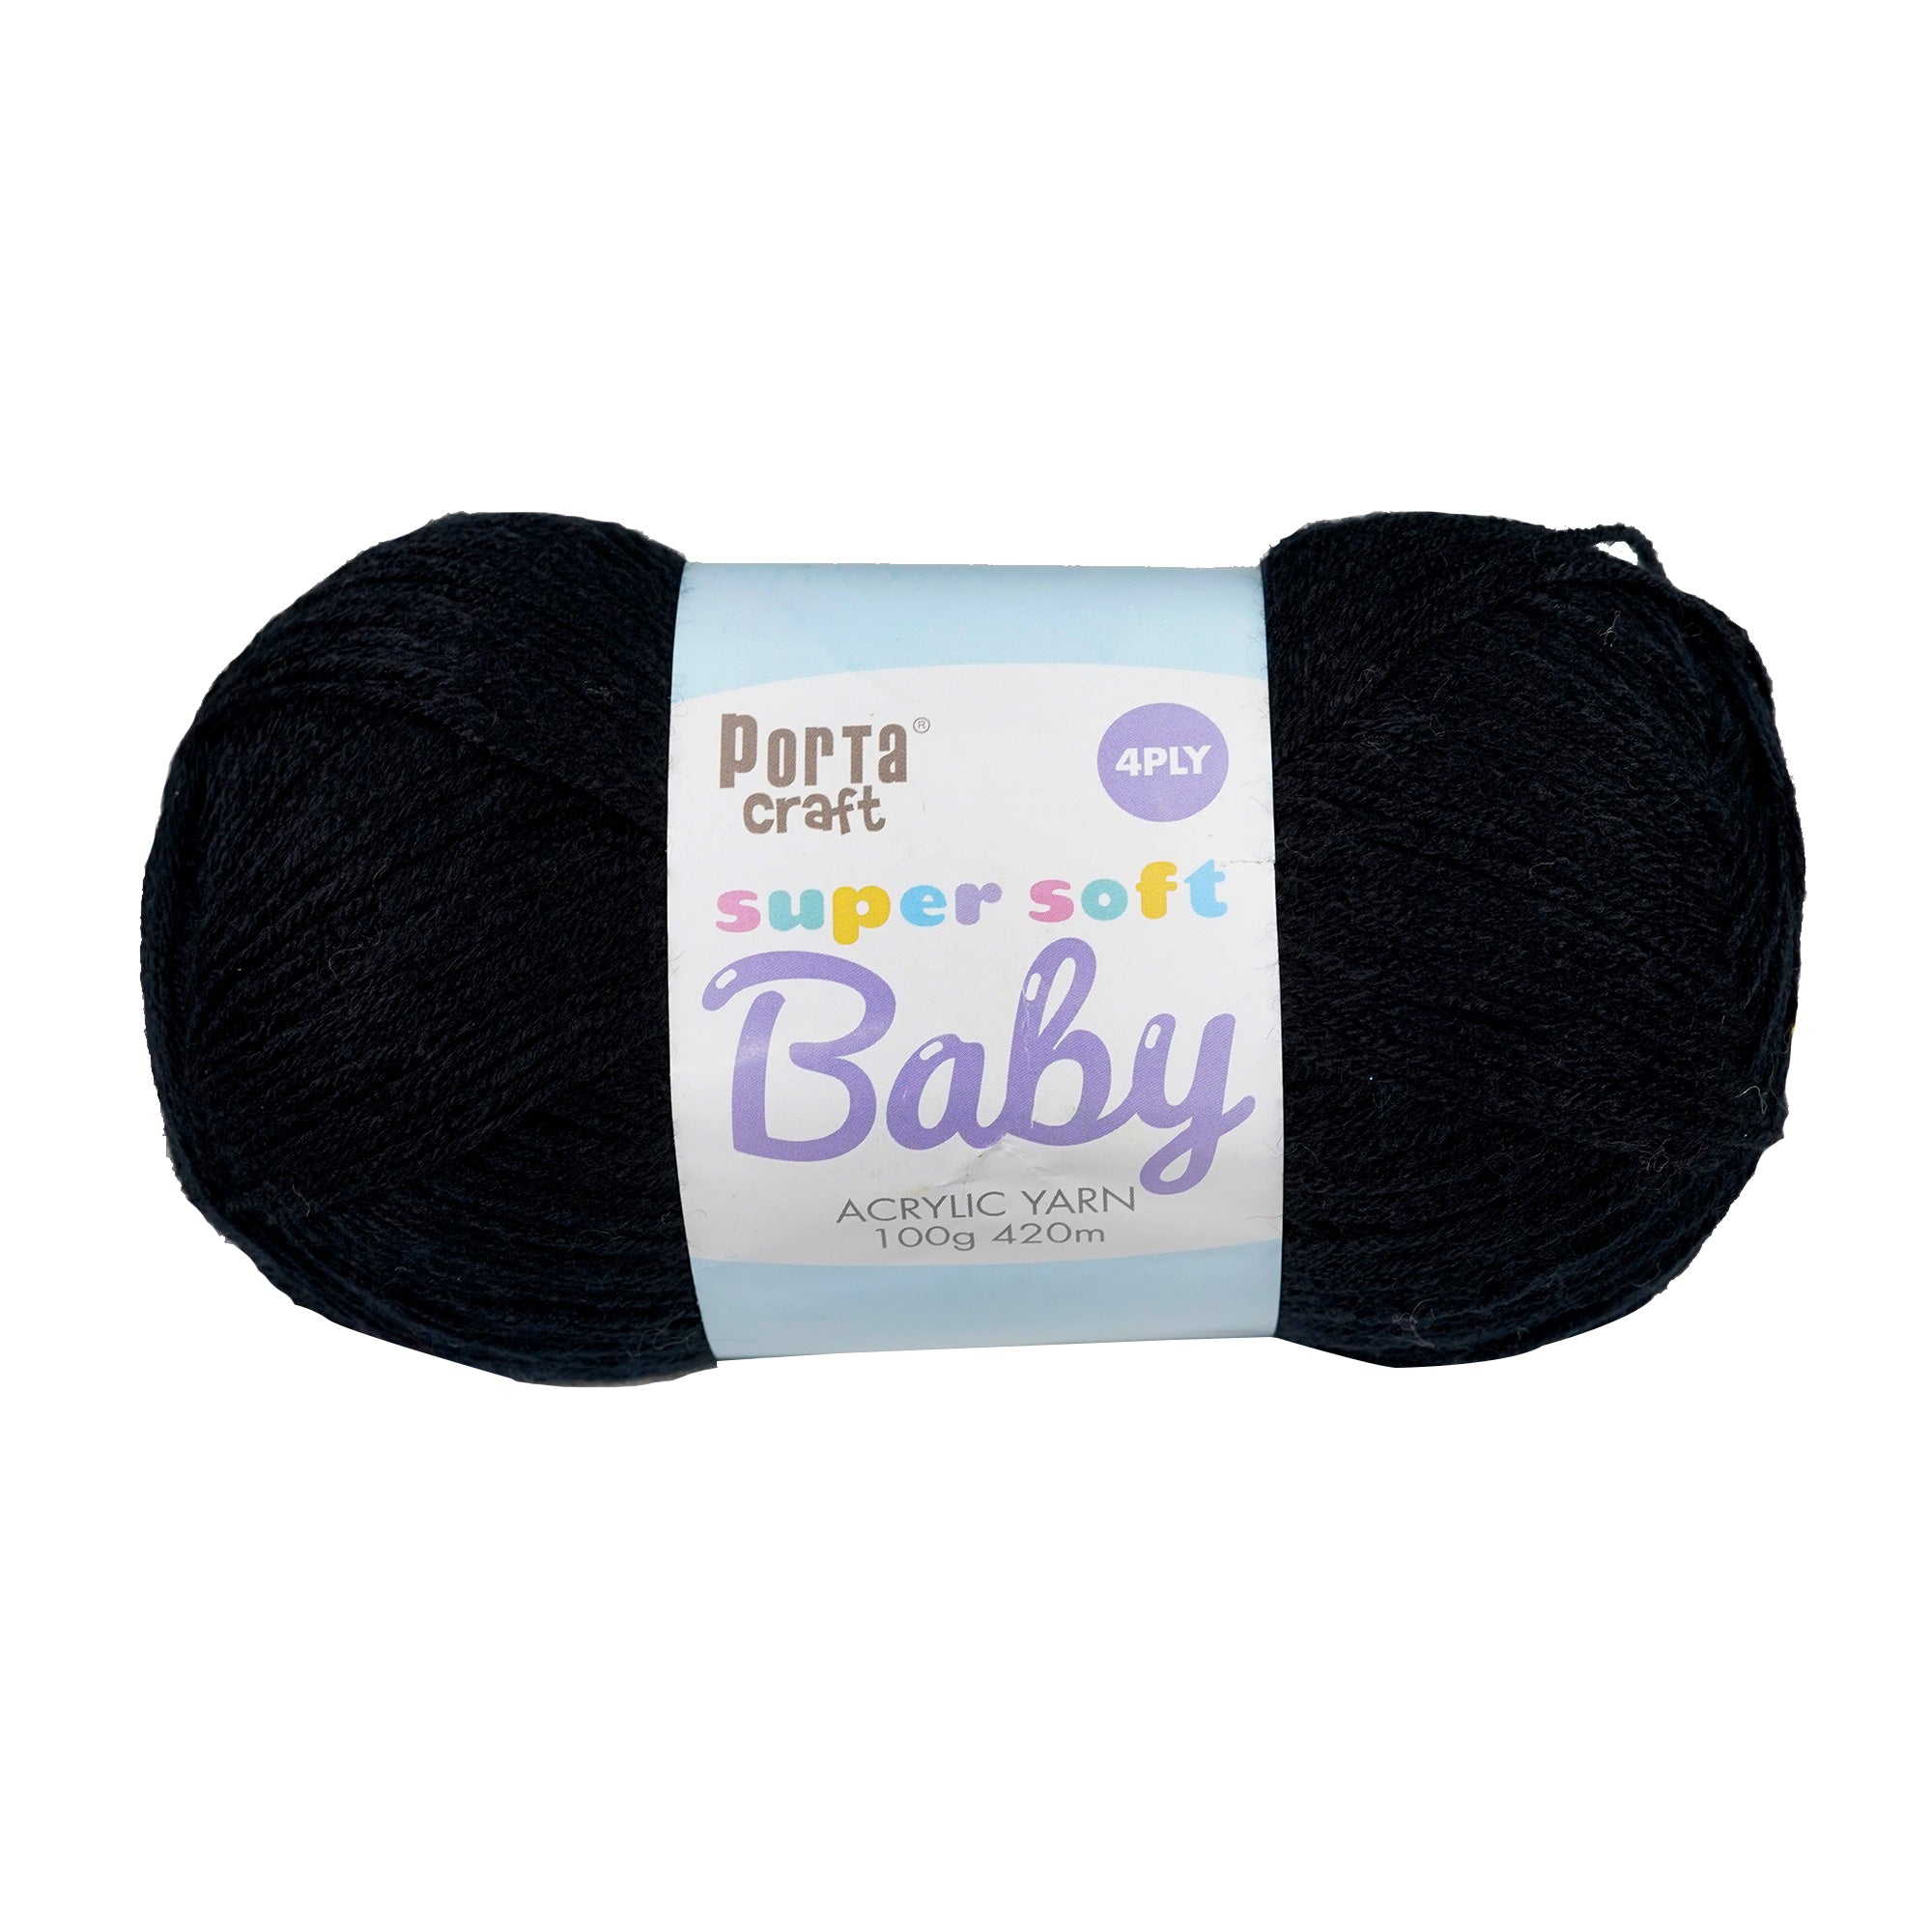 Porta Craft Super Soft Baby Acrylic Yarn 100% 100Gm 420M 4Ply Black